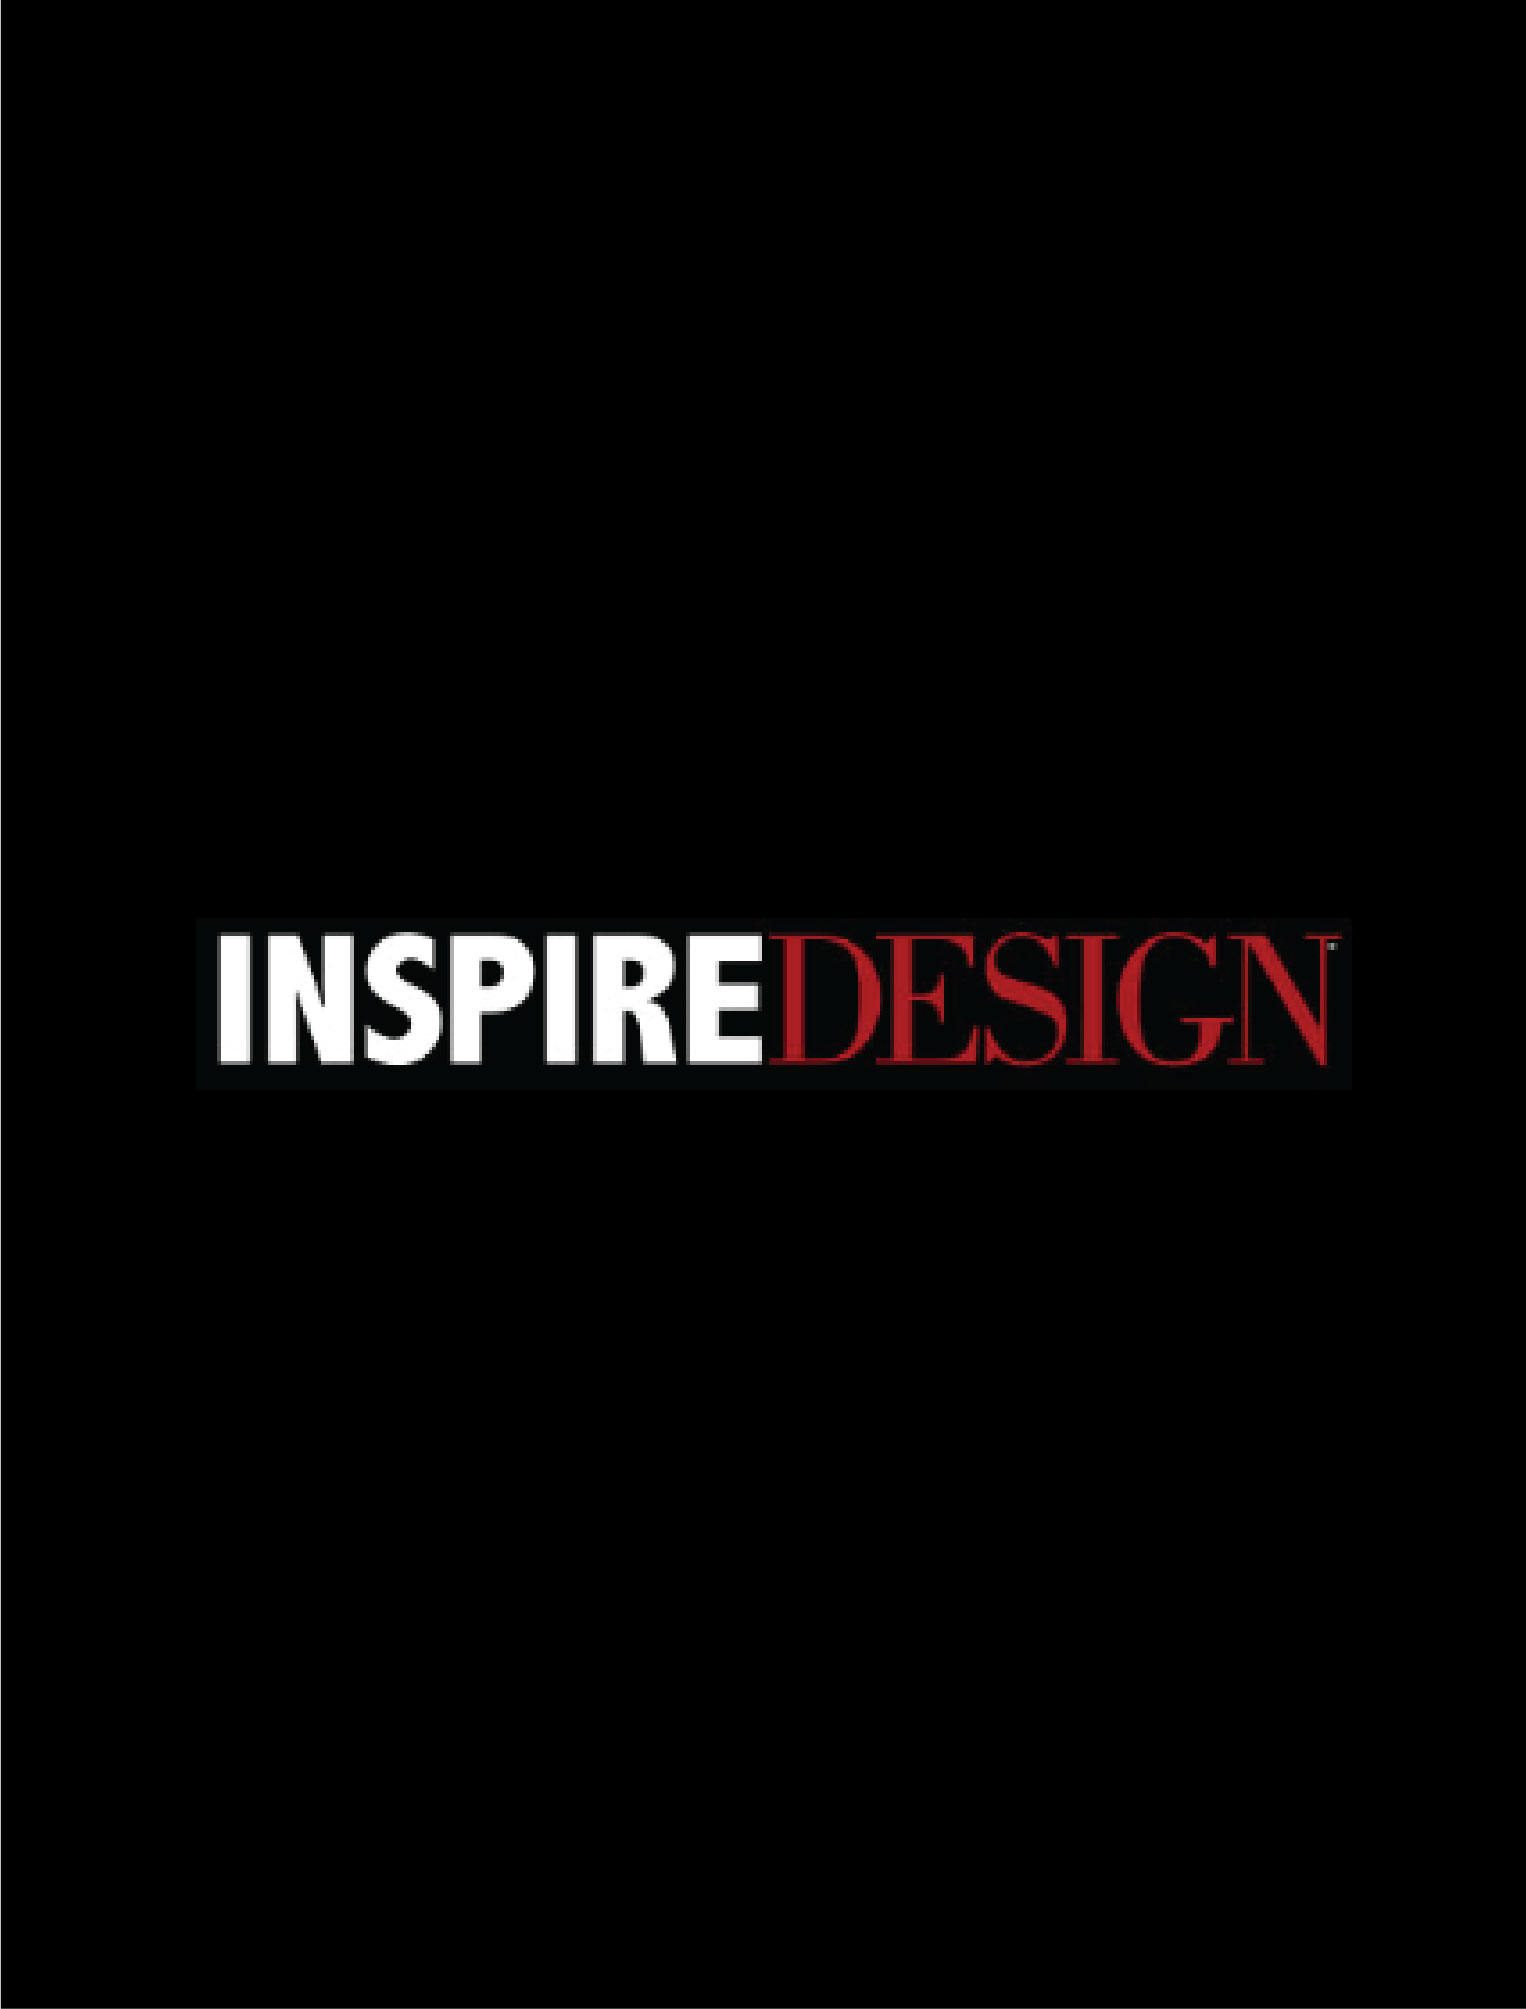 couverture et logo magazine inspire design